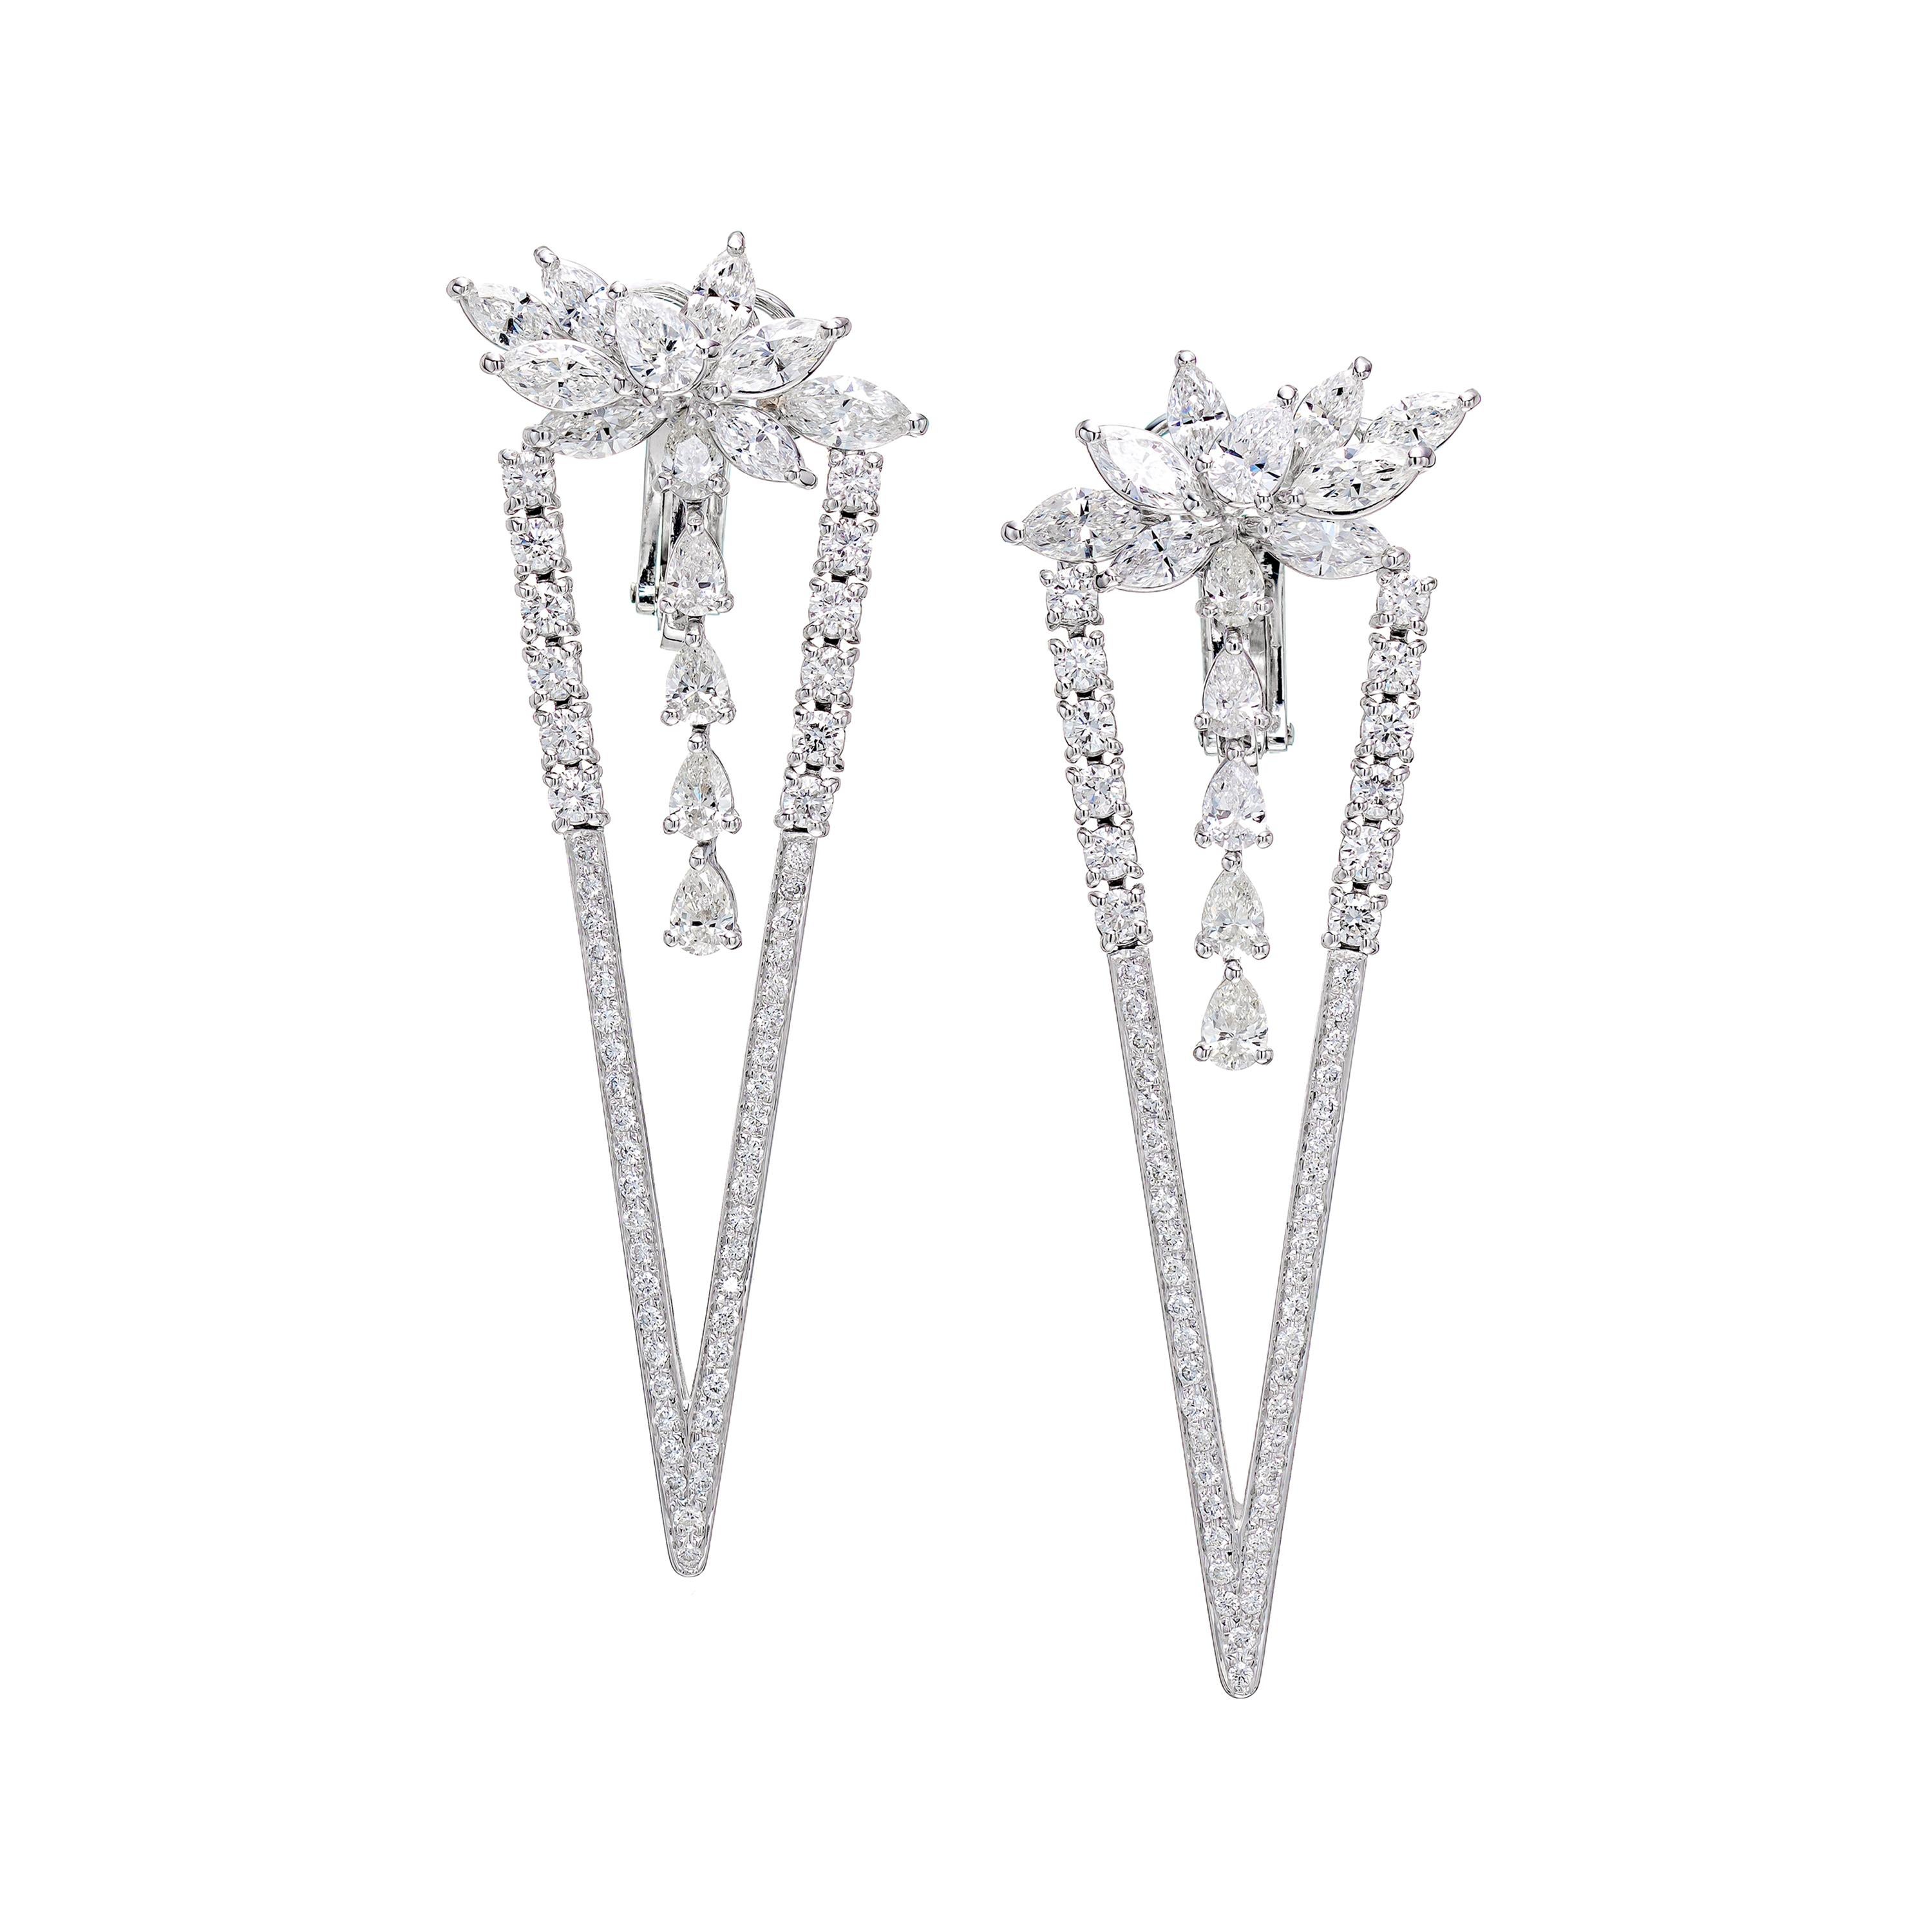 4.88 Carat Diamond Wings Triangle Earrings in 18k White Gold